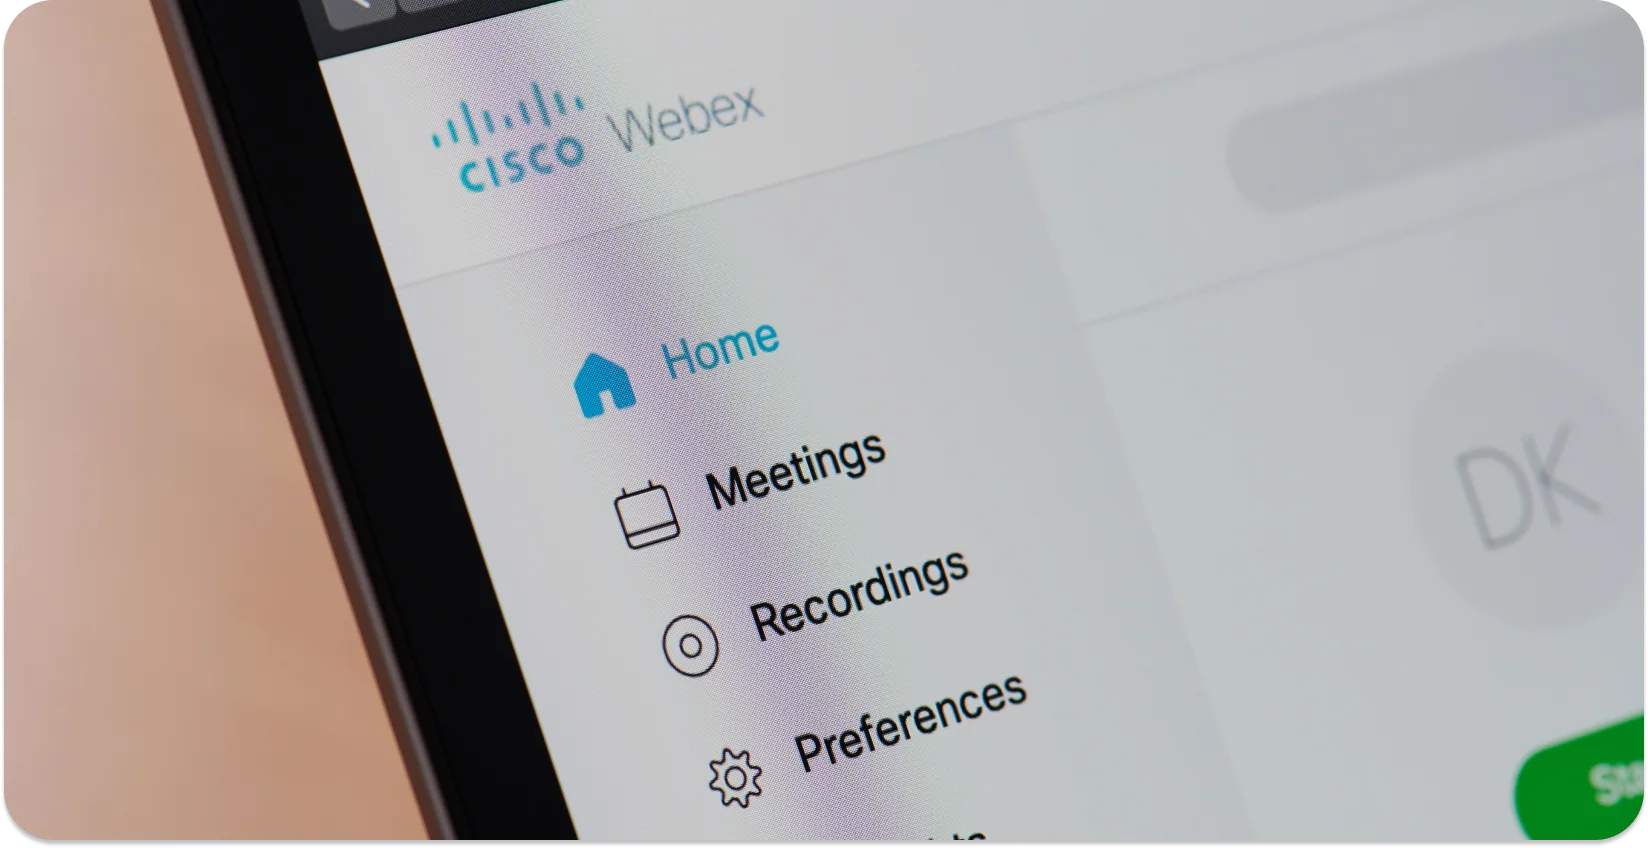 Akıllı telefon ekranında görüntülenen Webex toplantı seçeneklerini kaydedin.